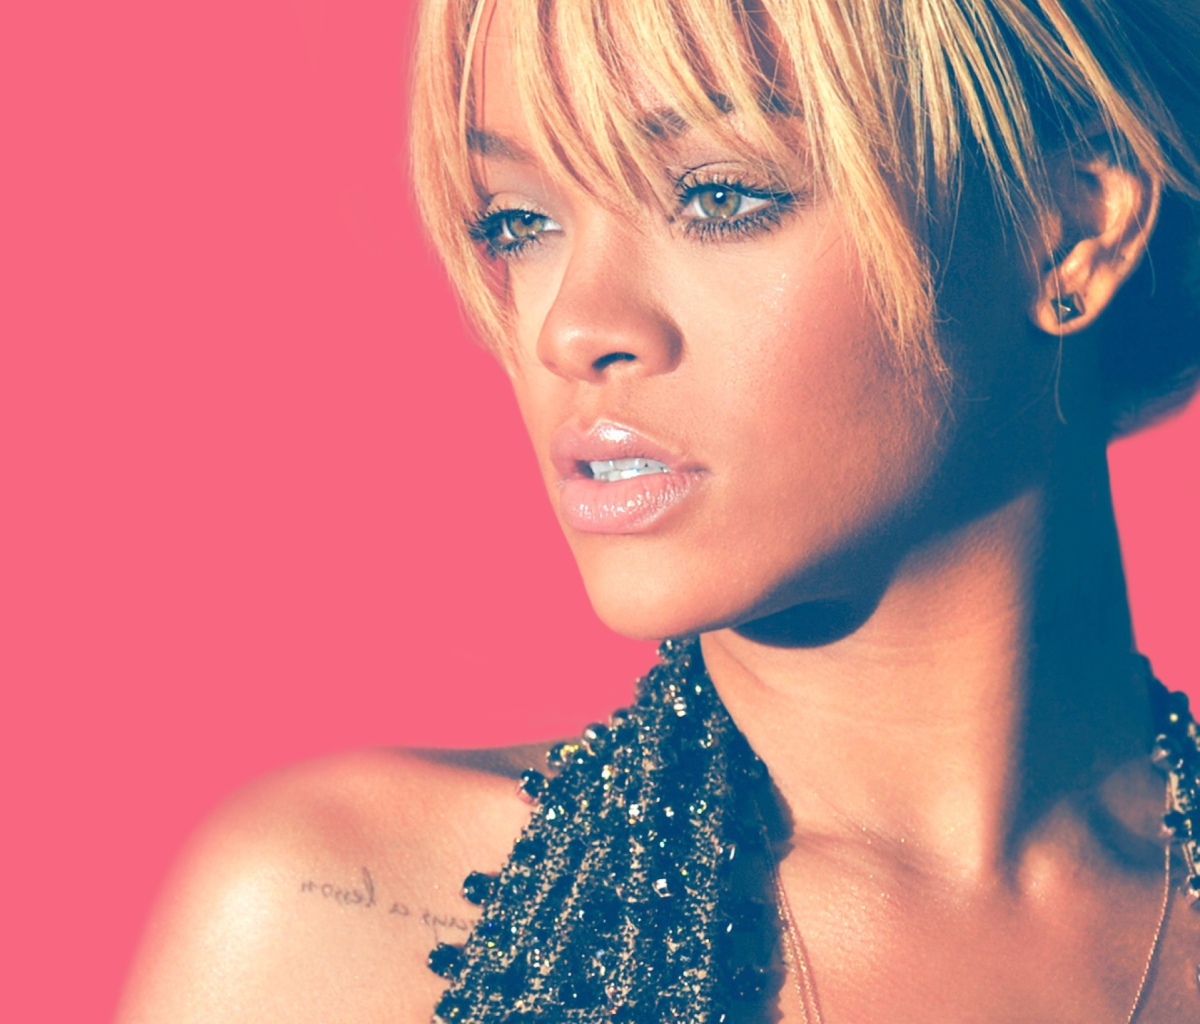 Rihanna Blonde Hair 2012 wallpaper 1200x1024